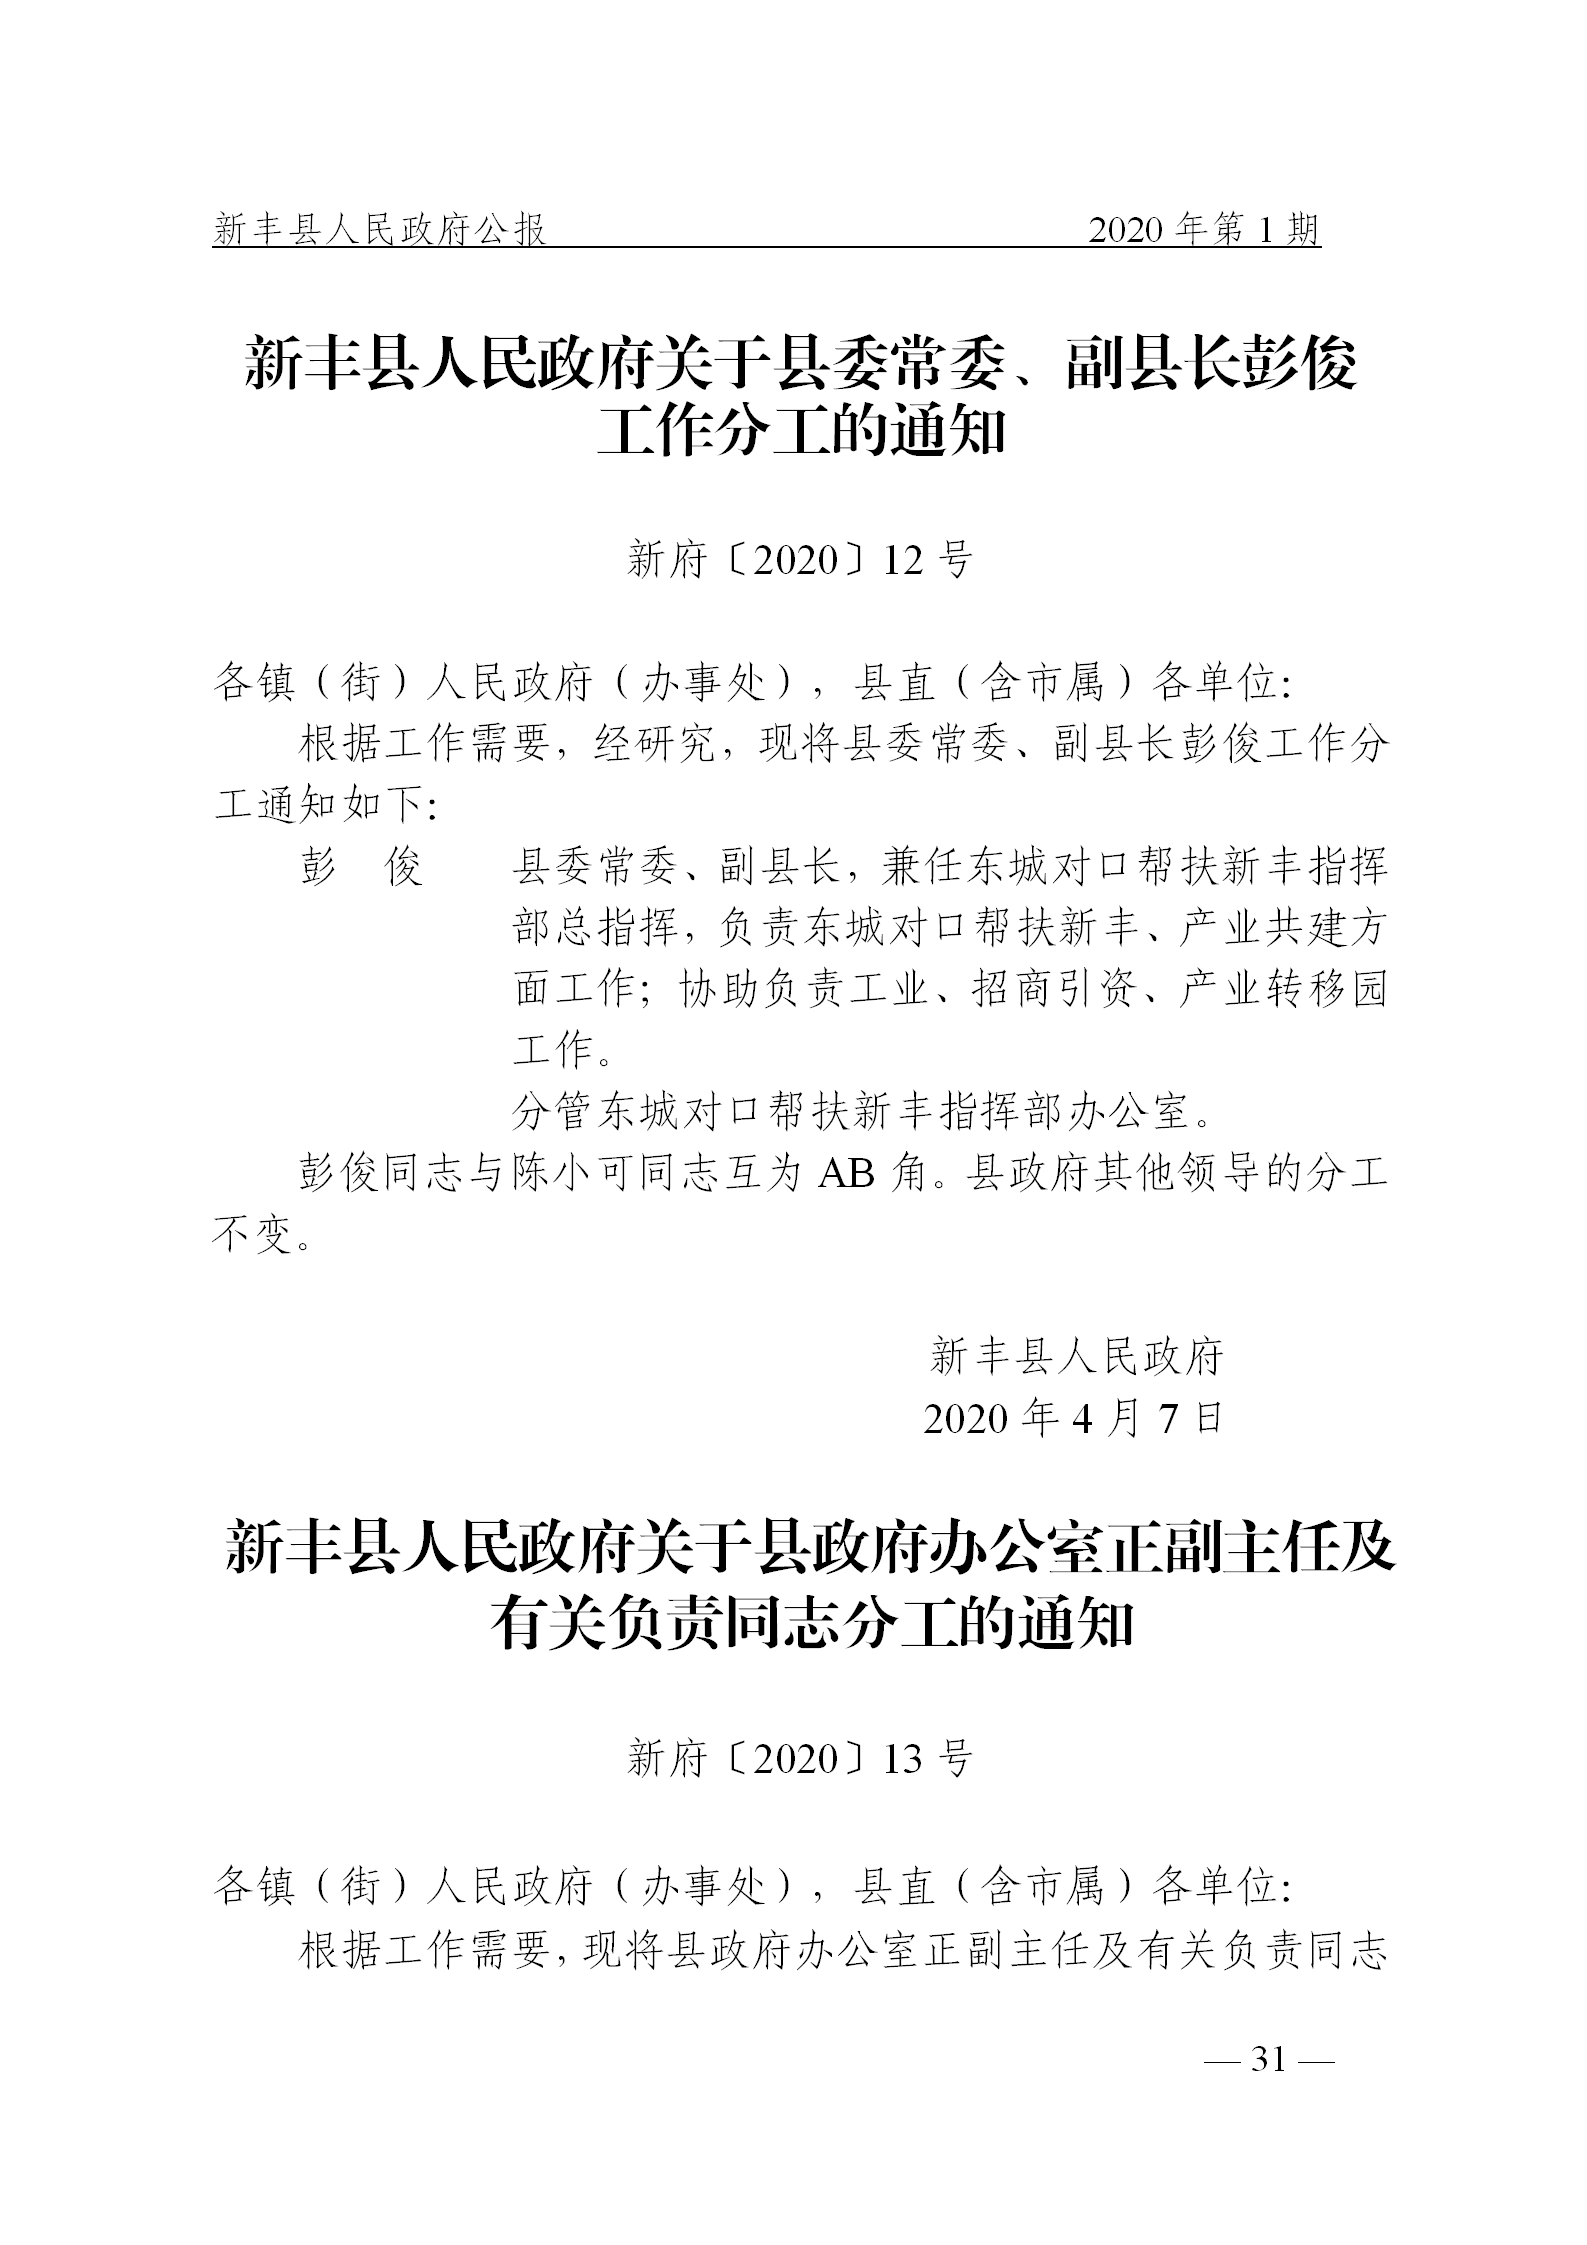 《新丰县人民政府公报》2020年第1期(1)_31.png